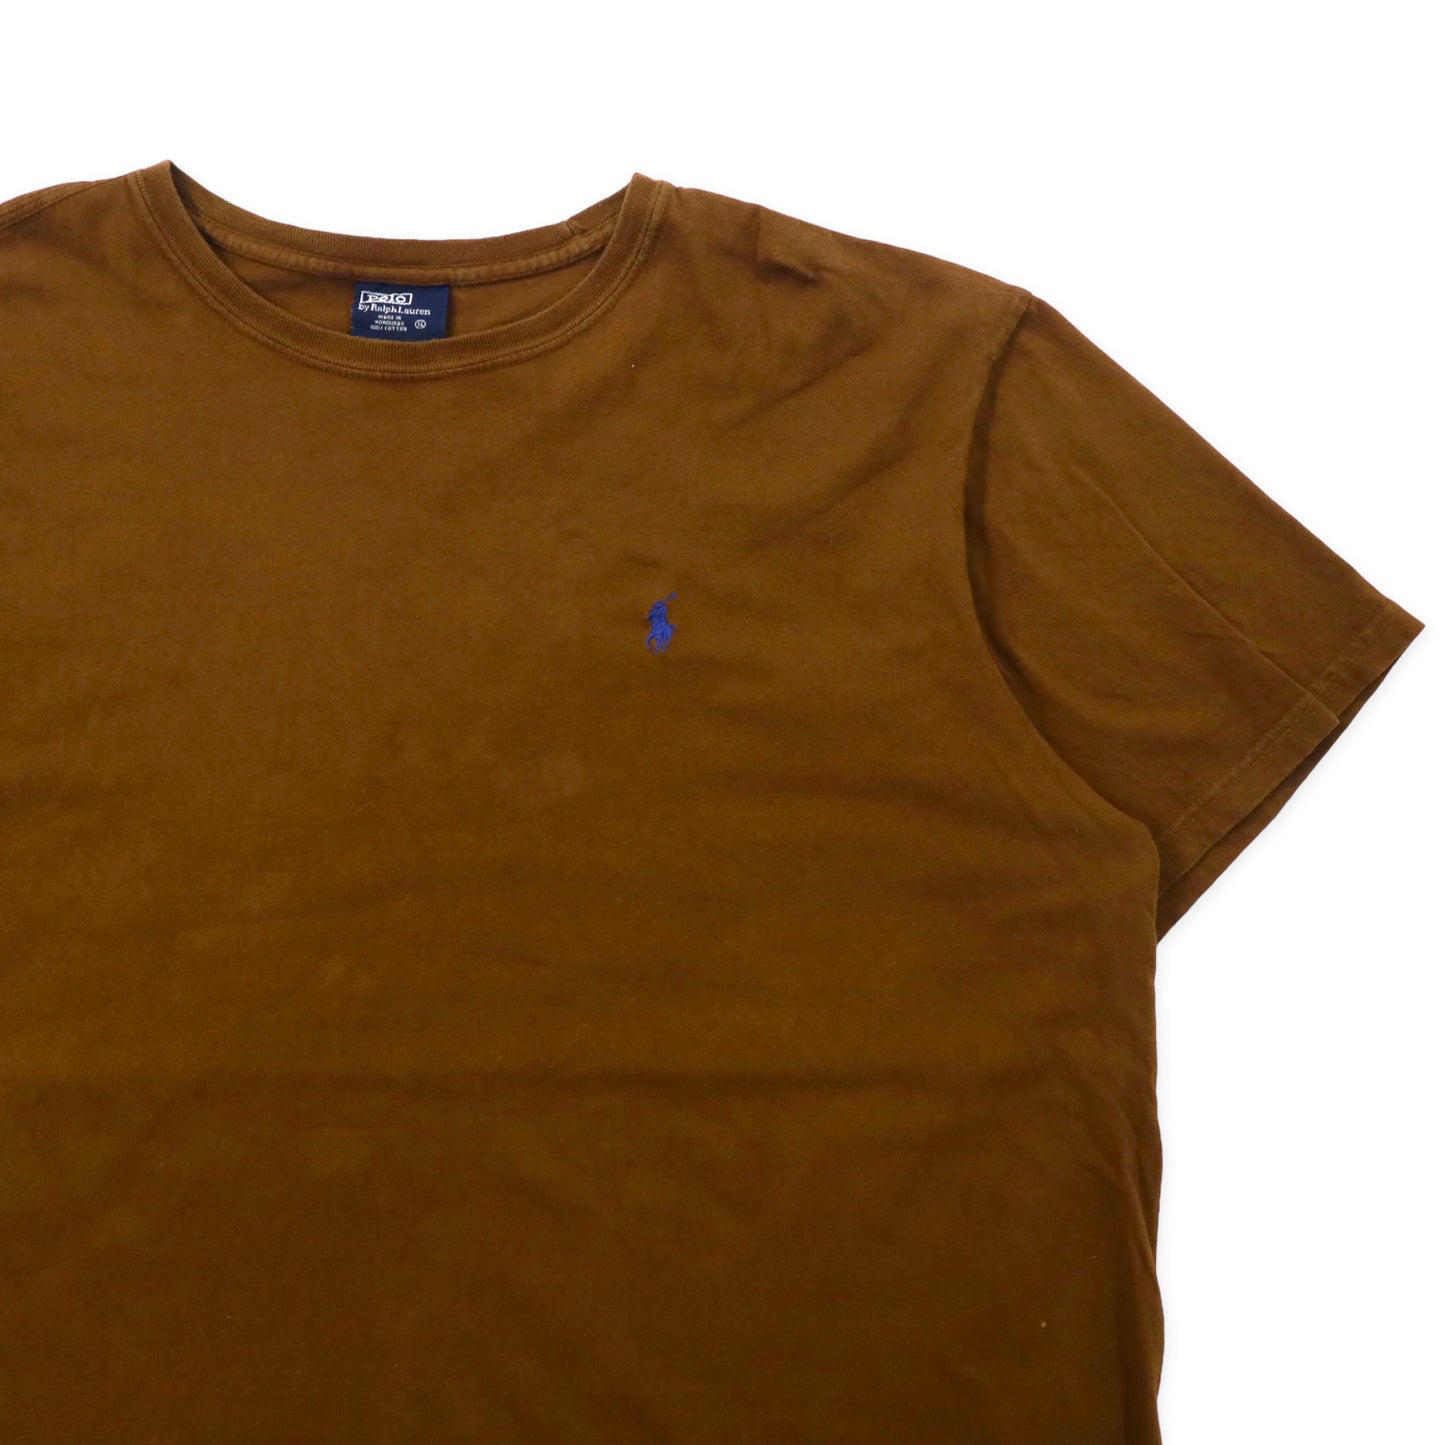 Polo by Ralph Lauren ワンポイントロゴTシャツ XL ブラウン コットン スモールポニー刺繍 ビッグサイズ